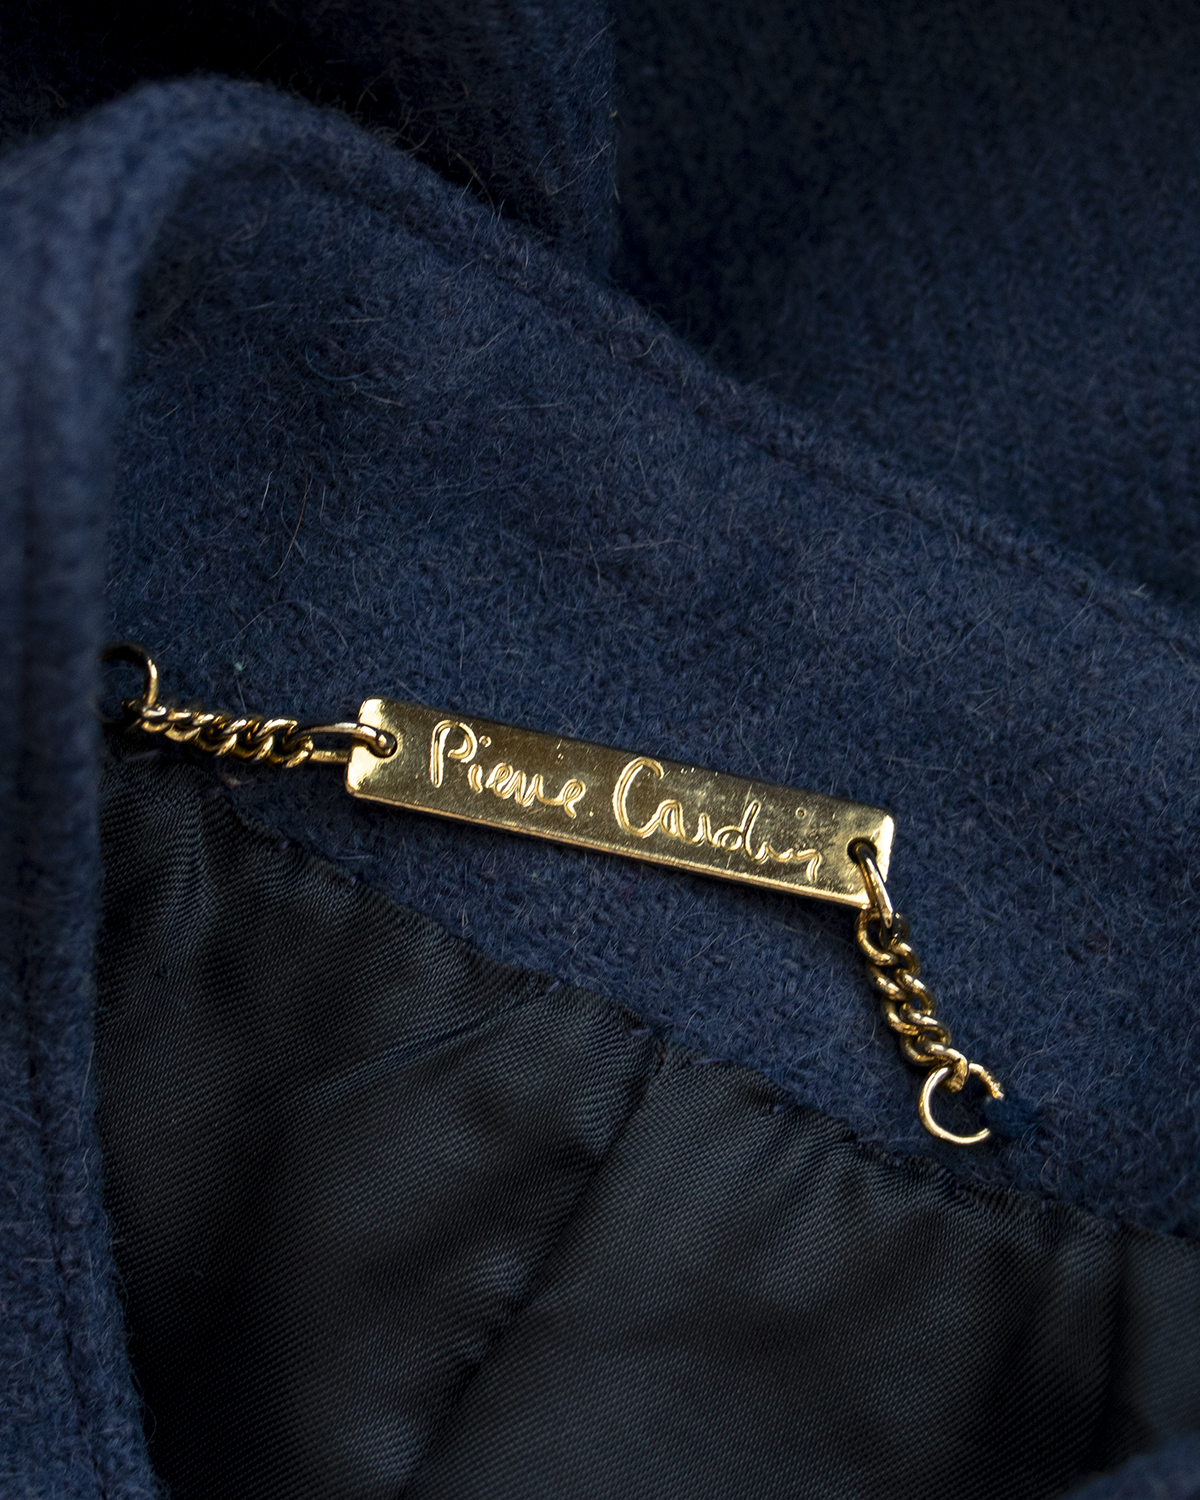 Pierre Cardin Blue Wool Jacket from 1970s